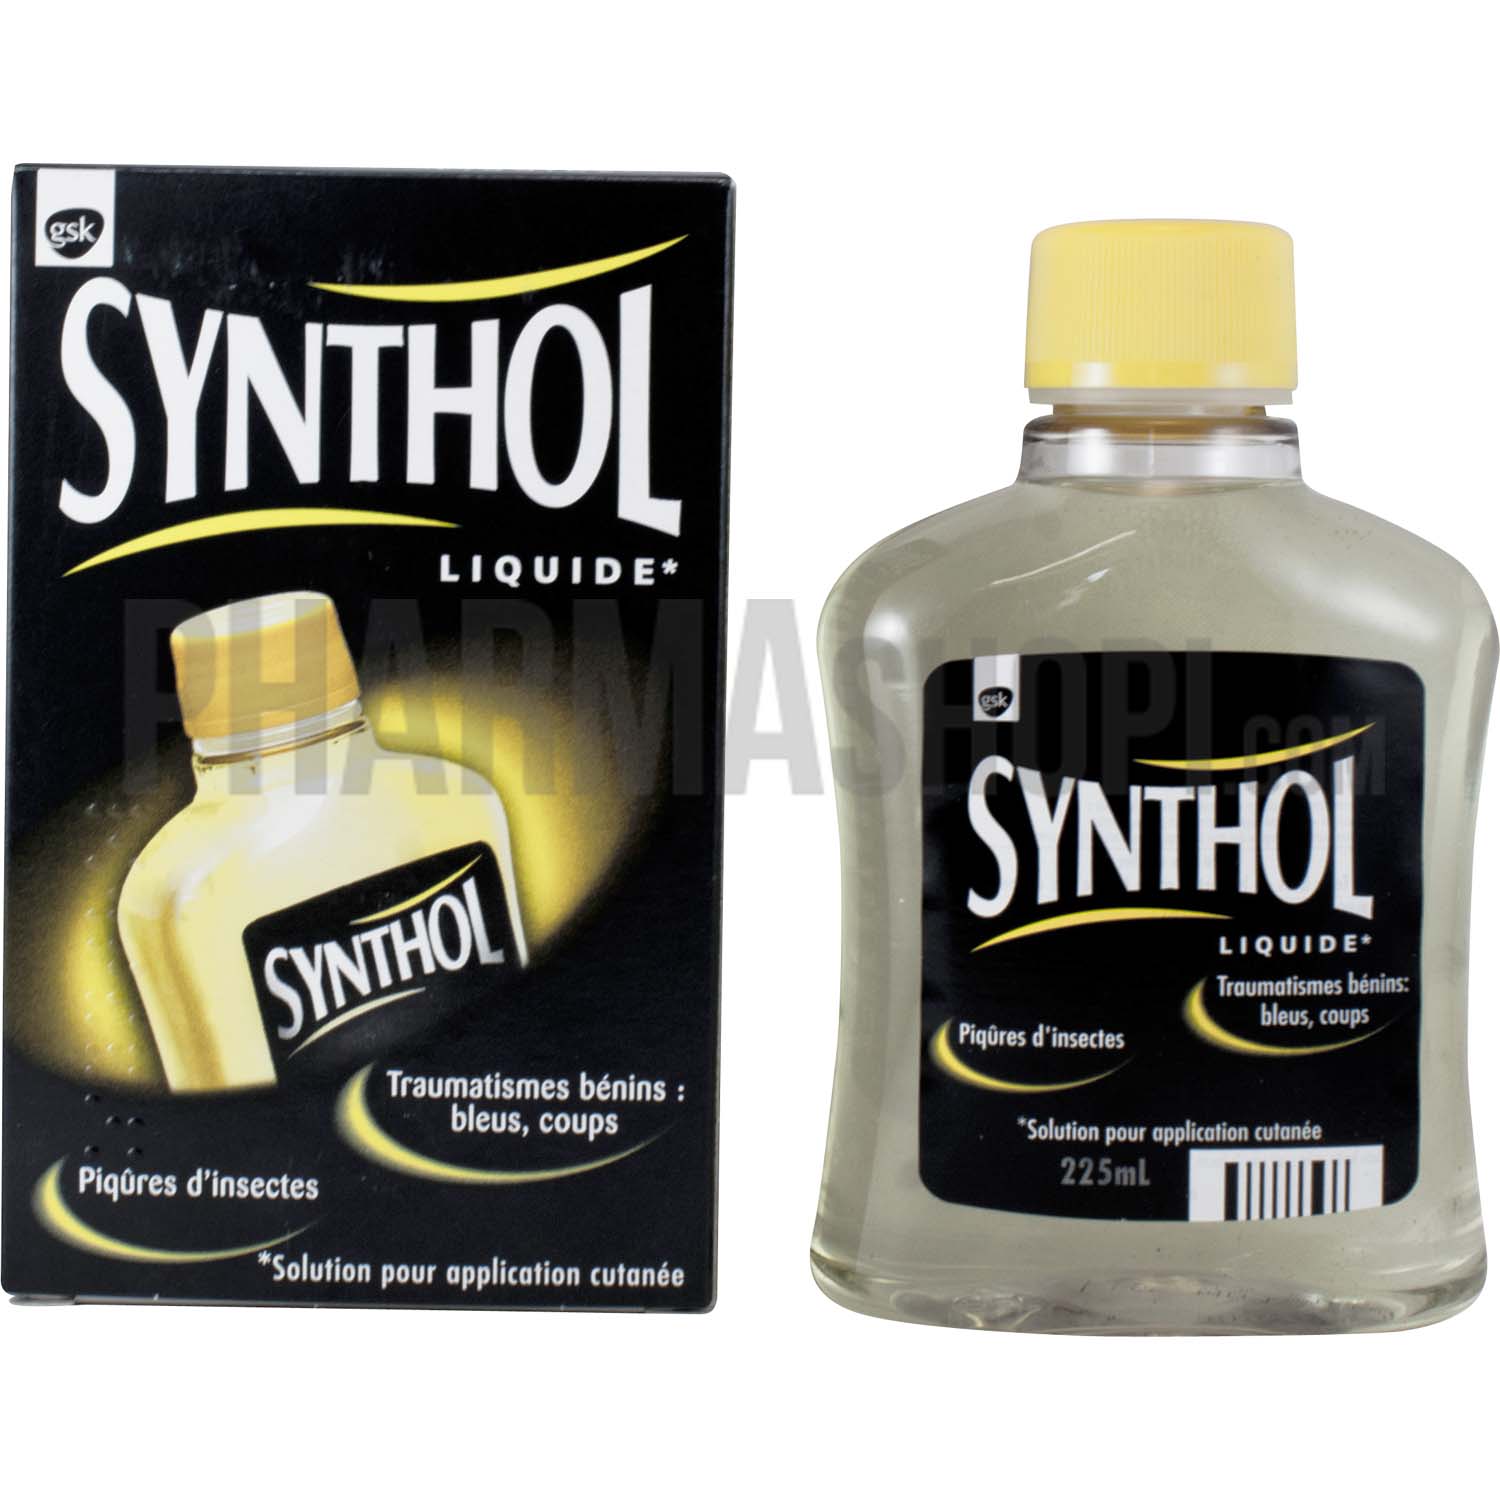 Synthol solution pour application cutanée – Coups, bleus, piqures